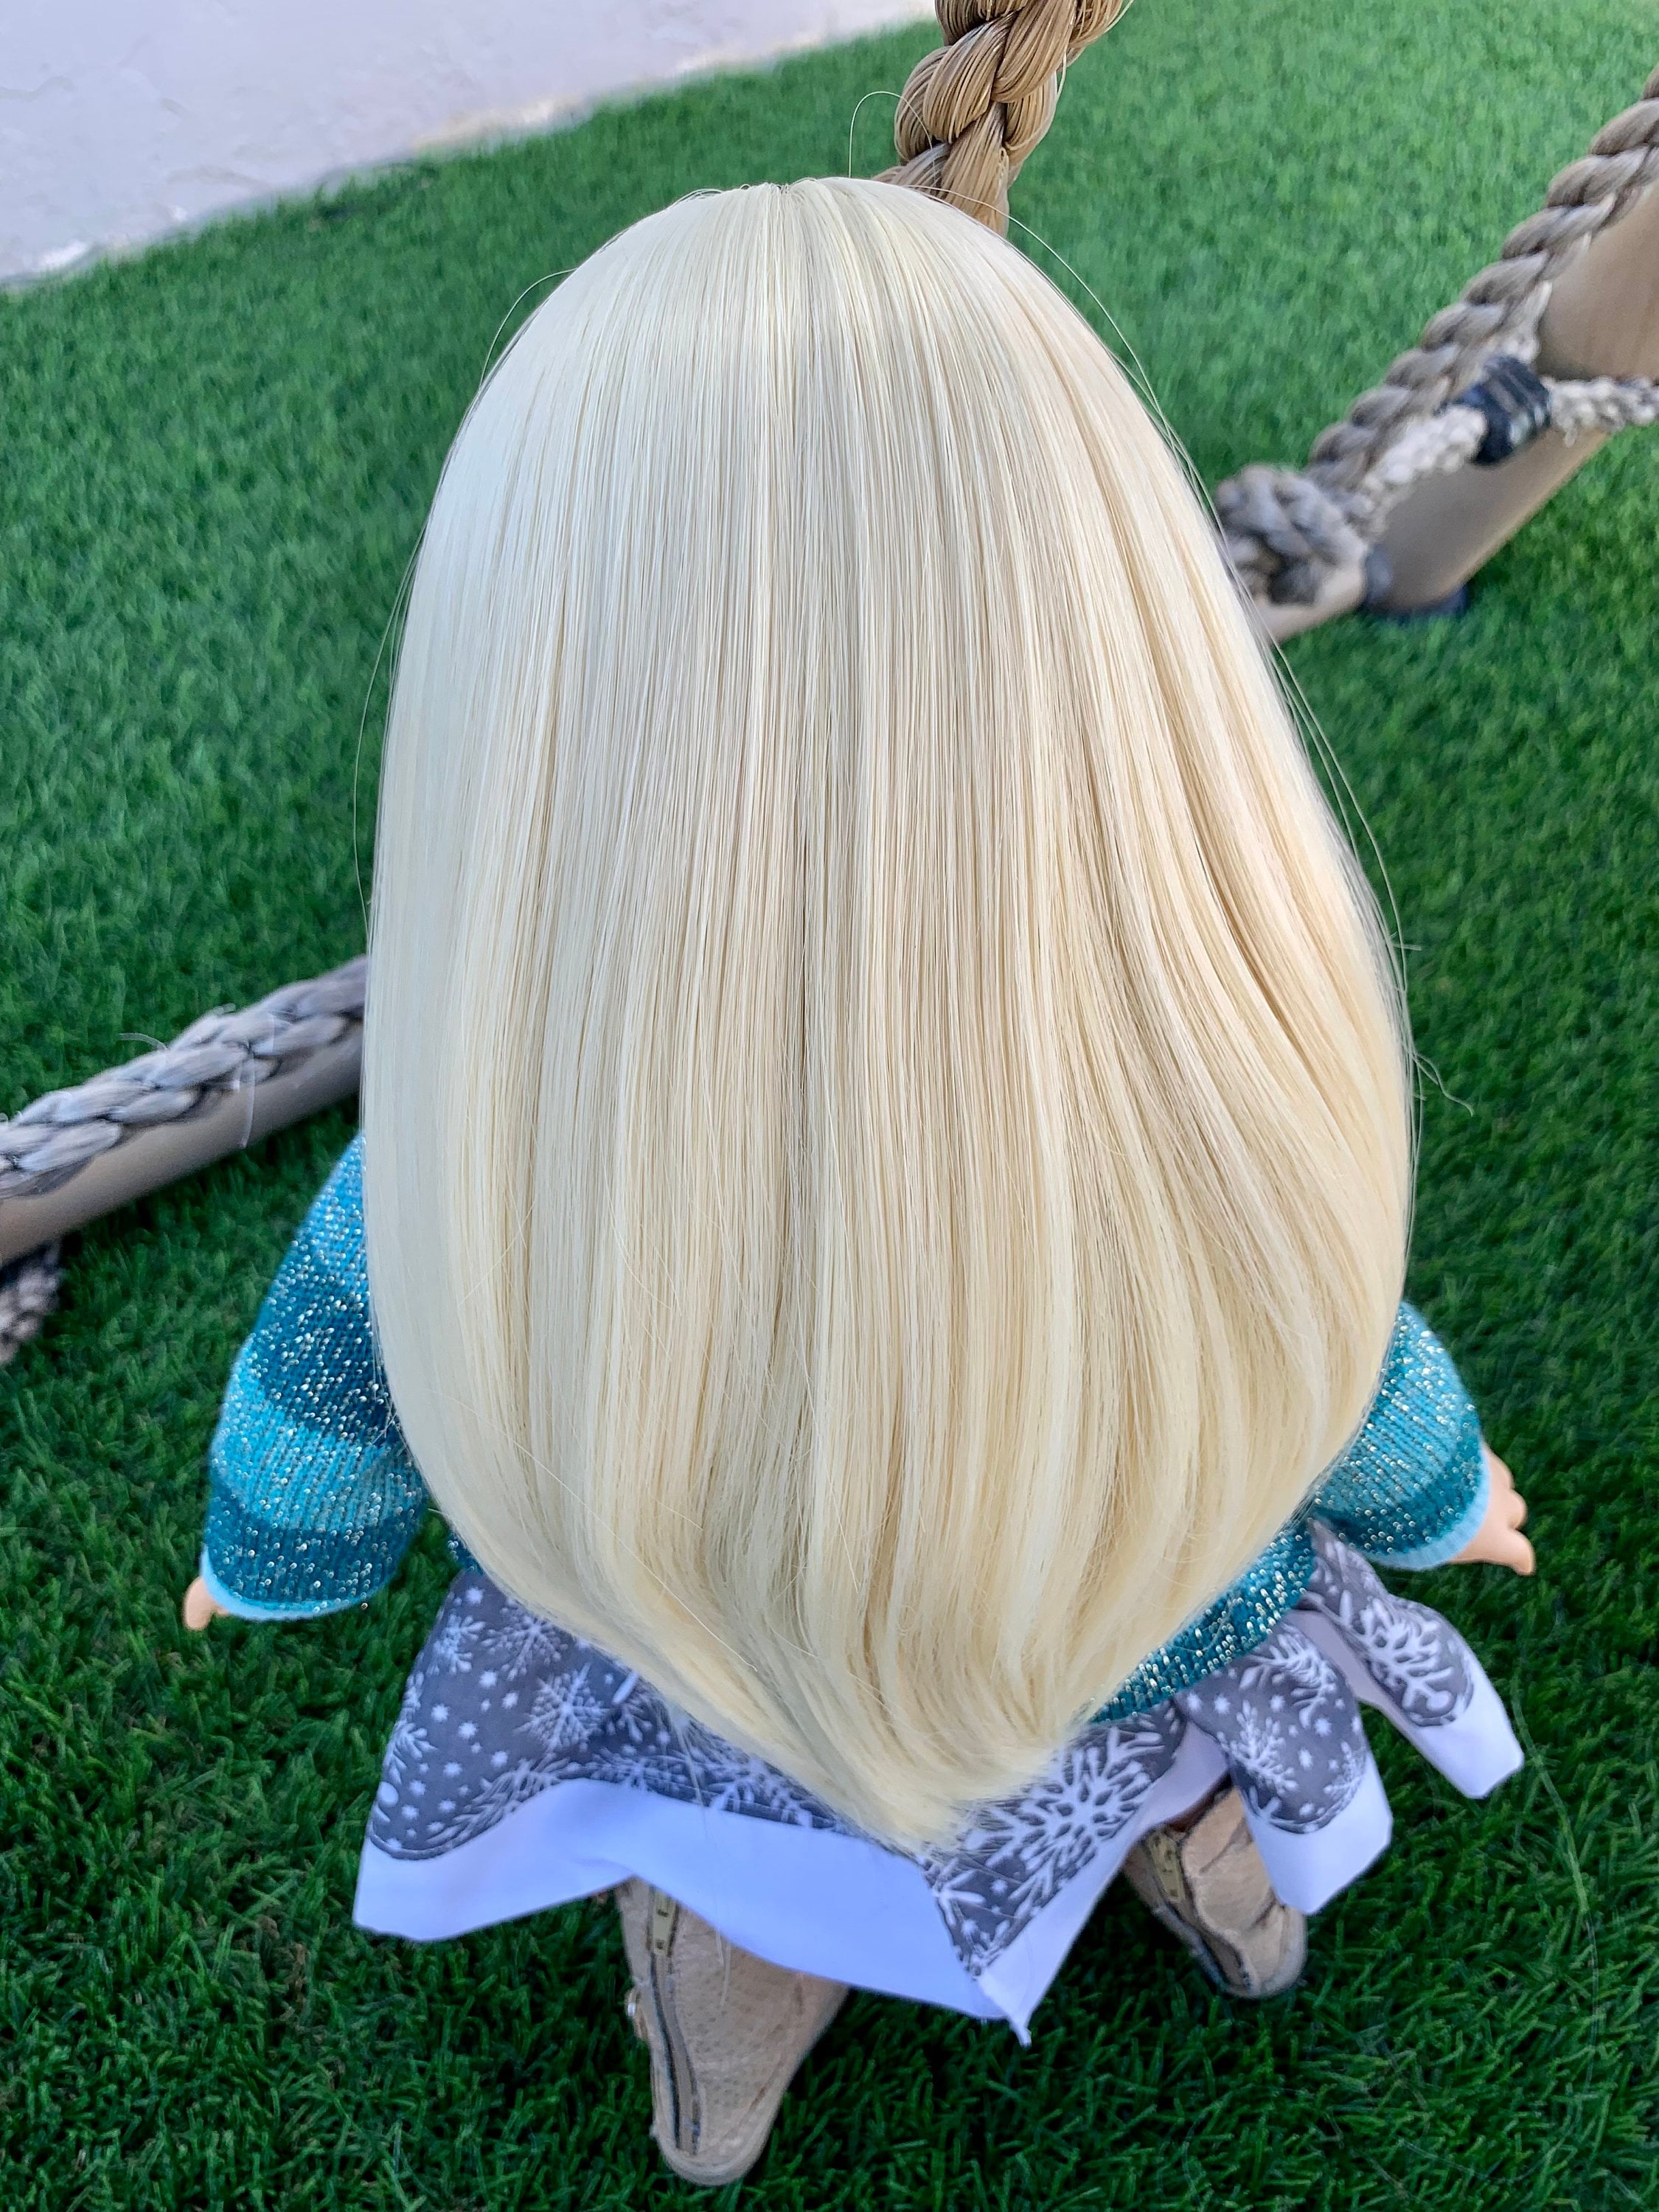 Custom doll wig for 18" American Girl Dolls - Heat Safe - Tangle Resistant - fits 10-11" head size of 18" dolls OG Blythe BJD Gotz  blonde